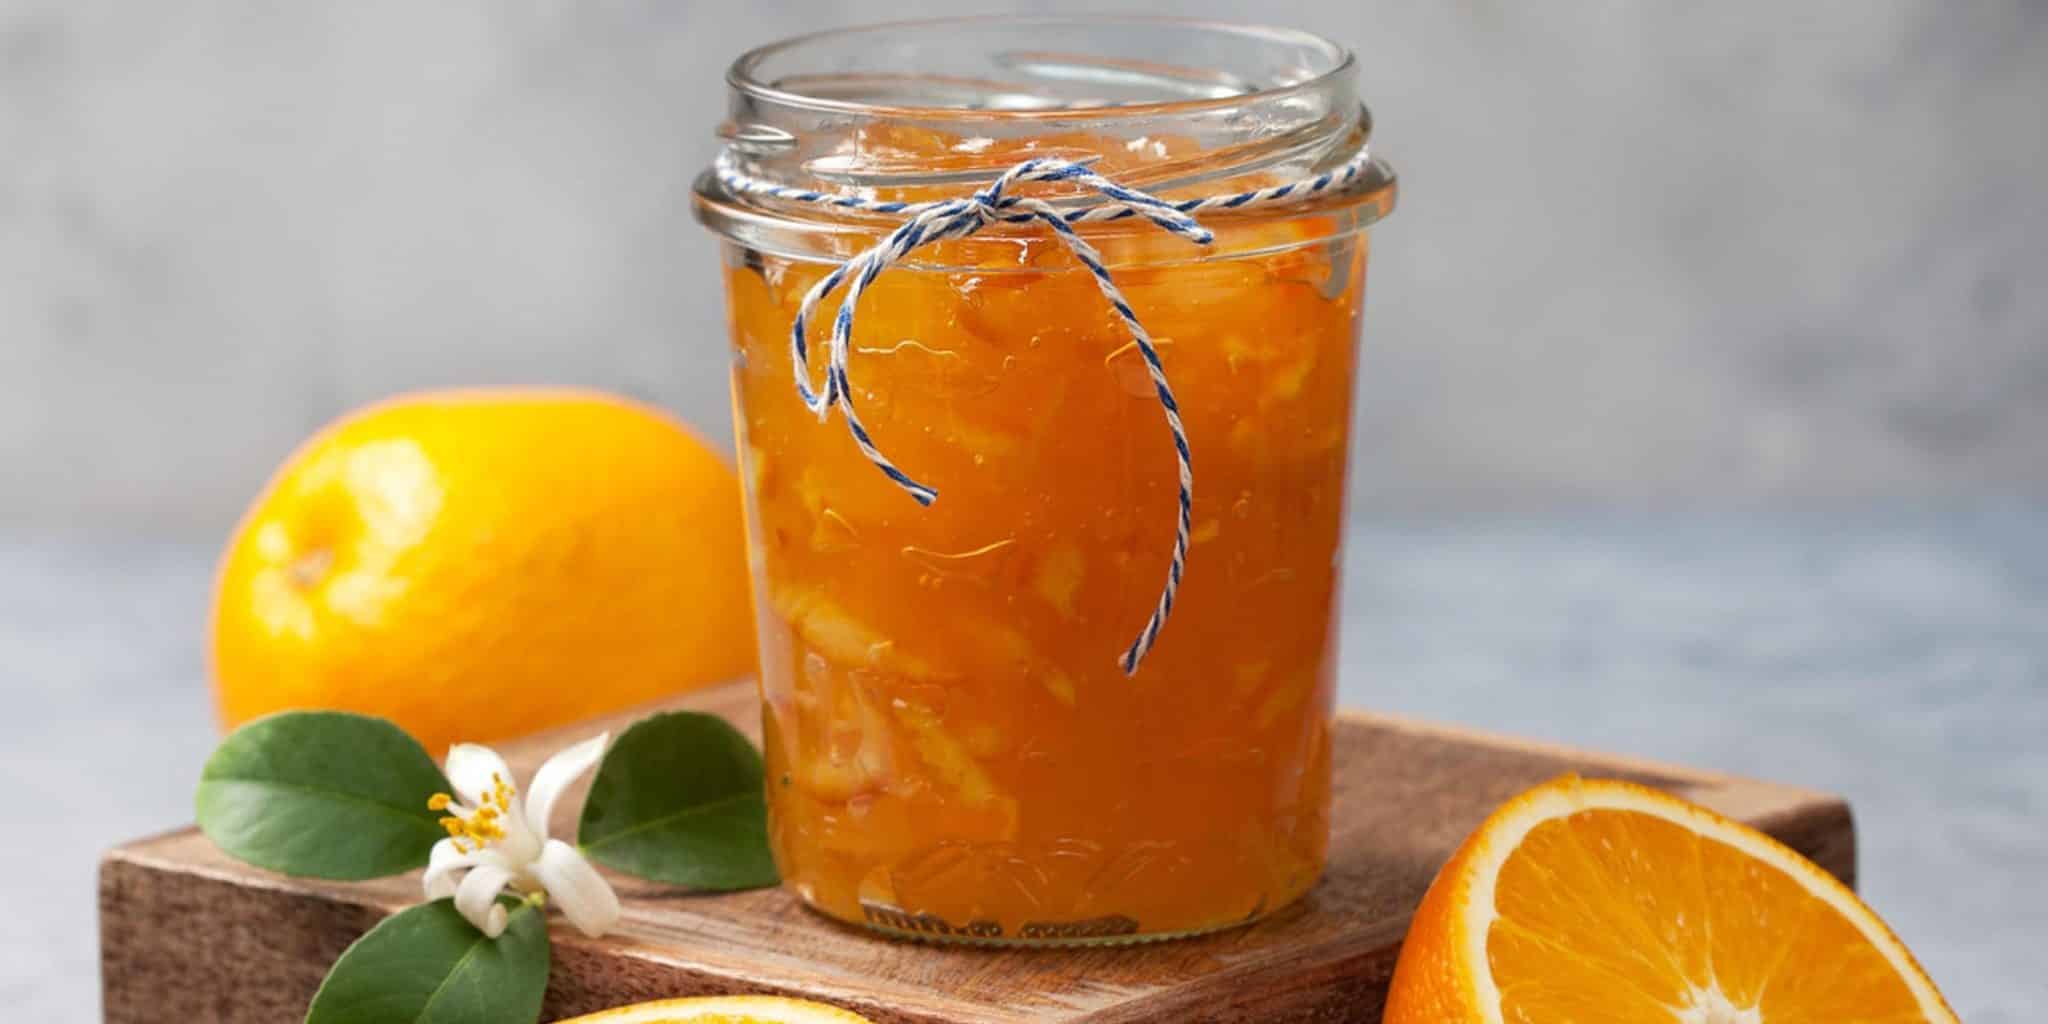 bittere orangenmarmelade | Essen Rezept